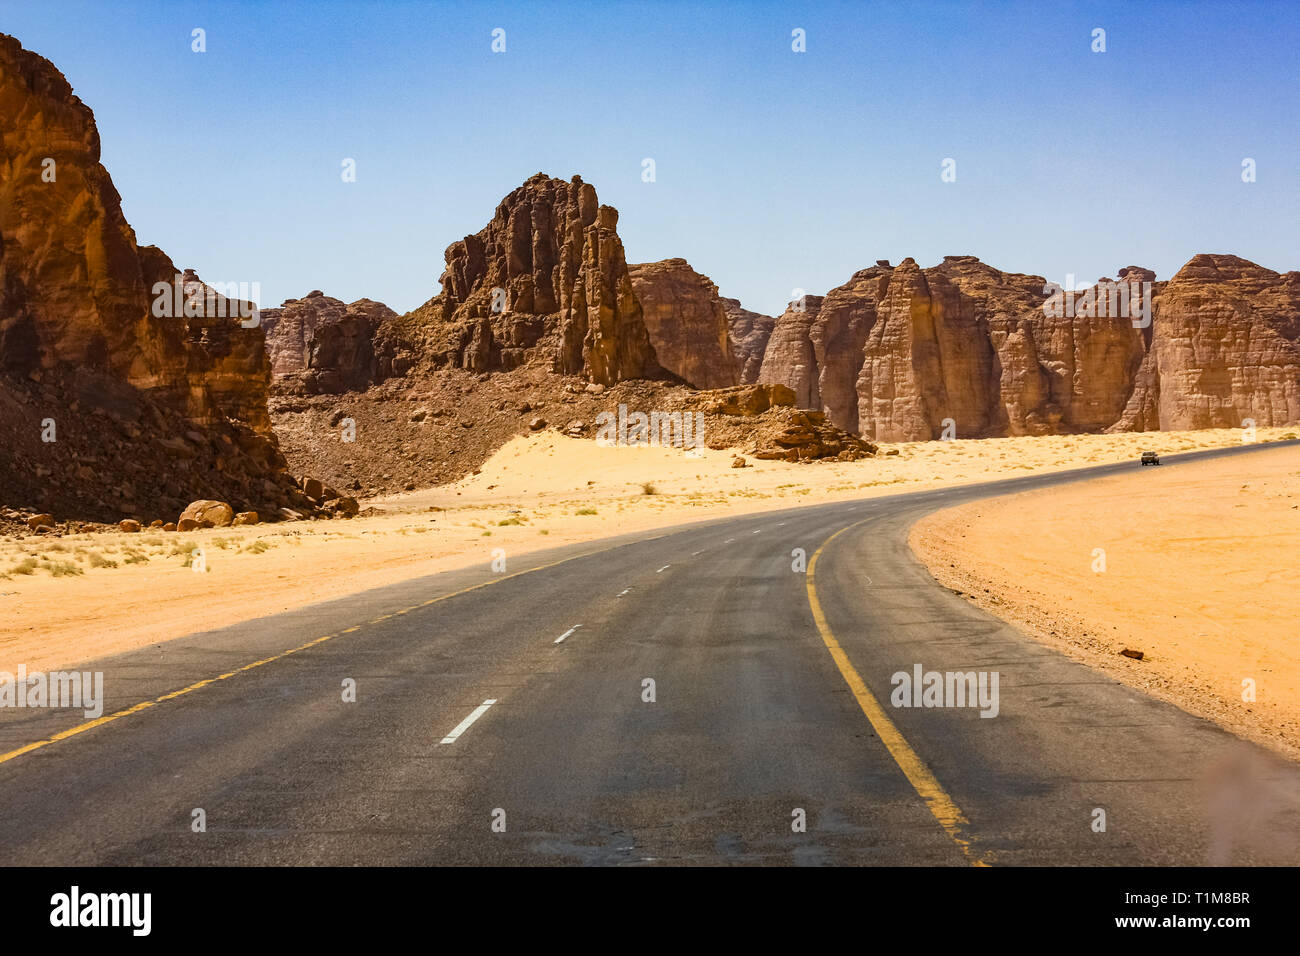 La carretera que conduce al Ula, Arabia Saudita Foto de stock